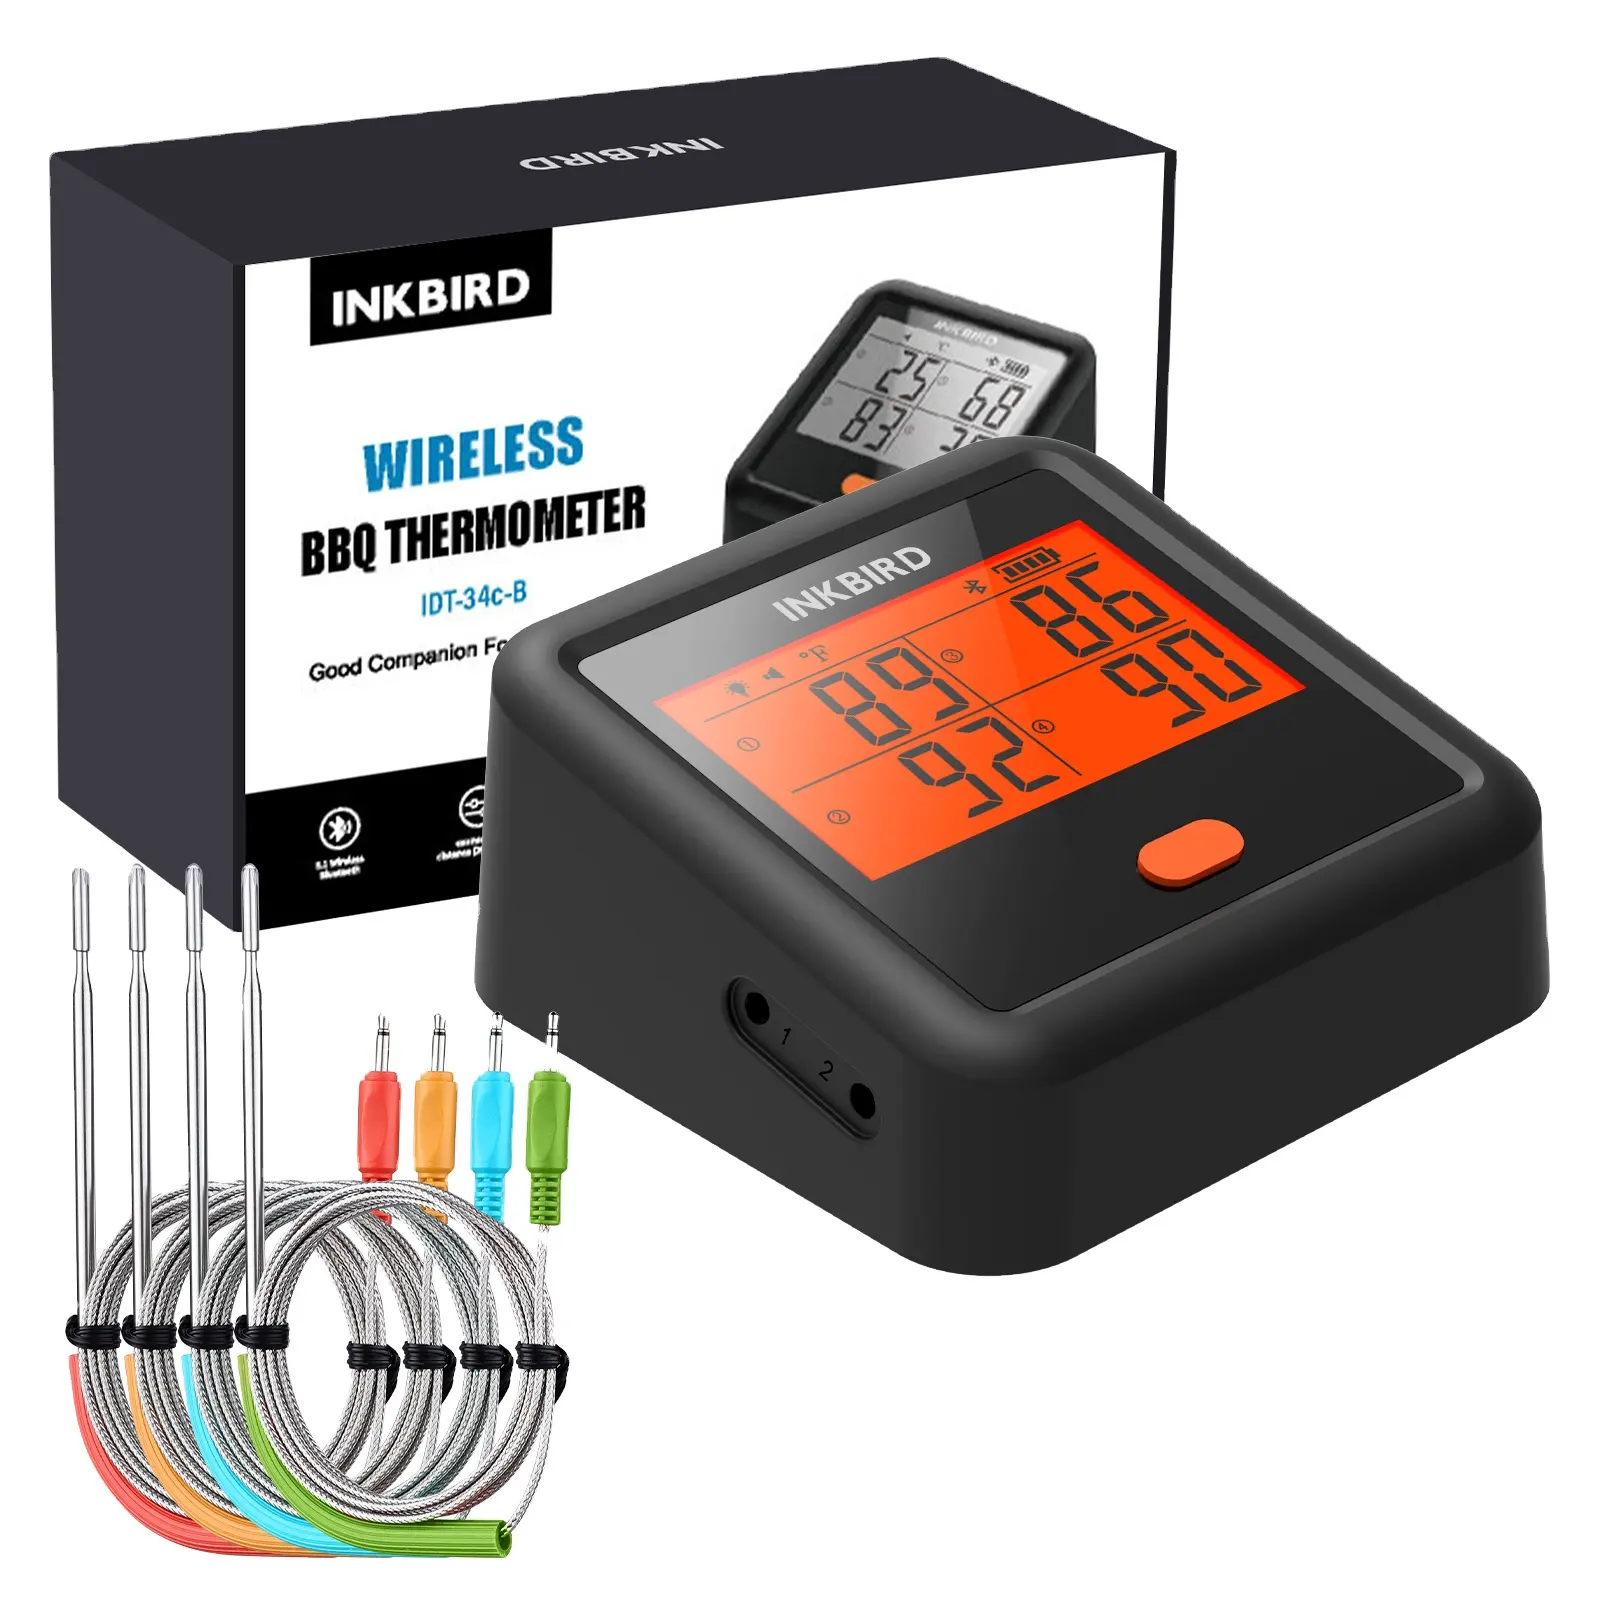 INKBIRD termometer daging Digital 4 probe, alat pengukur suhu dapur tanpa kabel memasak BBQ makanan BT untuk panggangan Gas arang Kamado